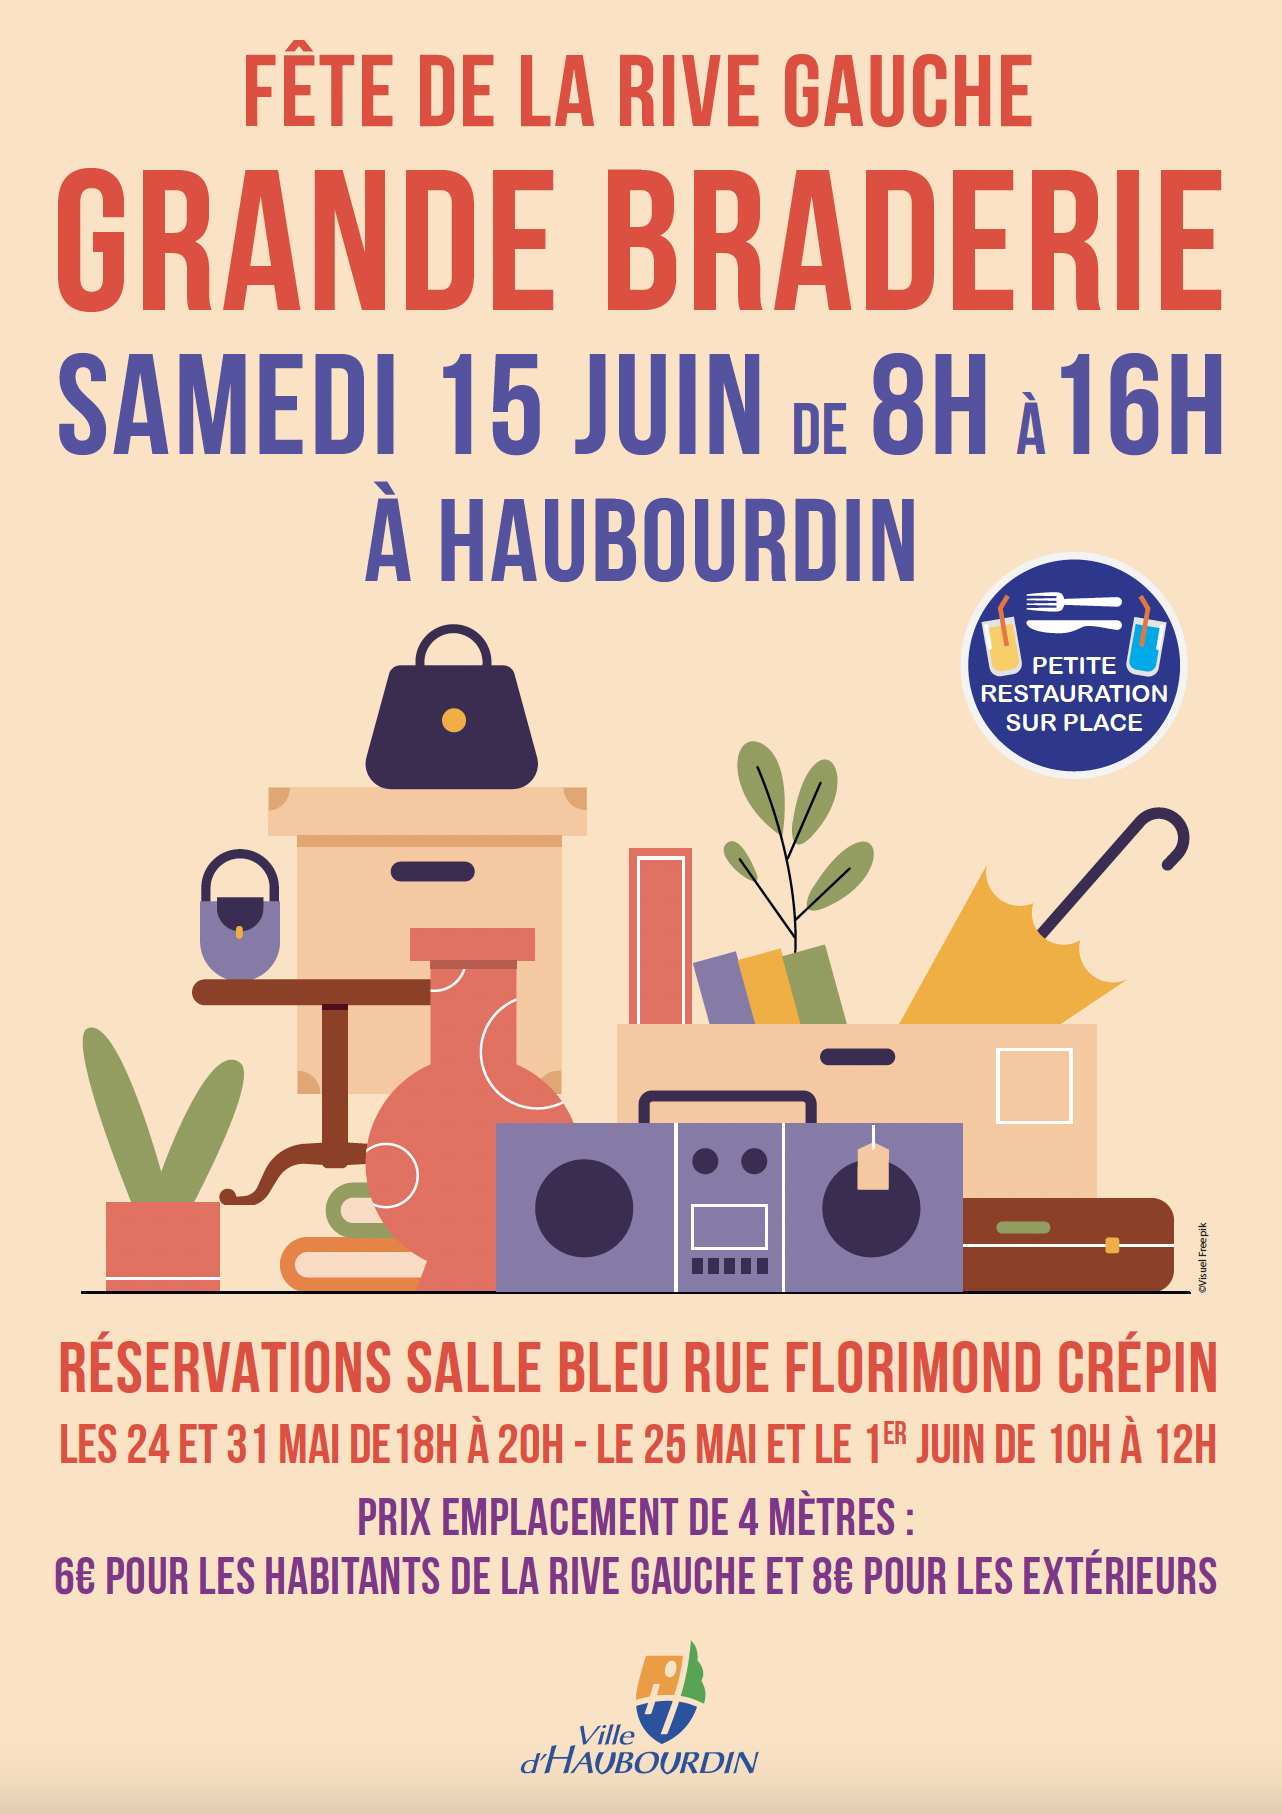 Haubourdin Association Fête de la Rive Gauche
Braderie de la Rive Gauche (quartier rive gauche)
Samedi 15 juin 2024 de 8h00 à 16h00